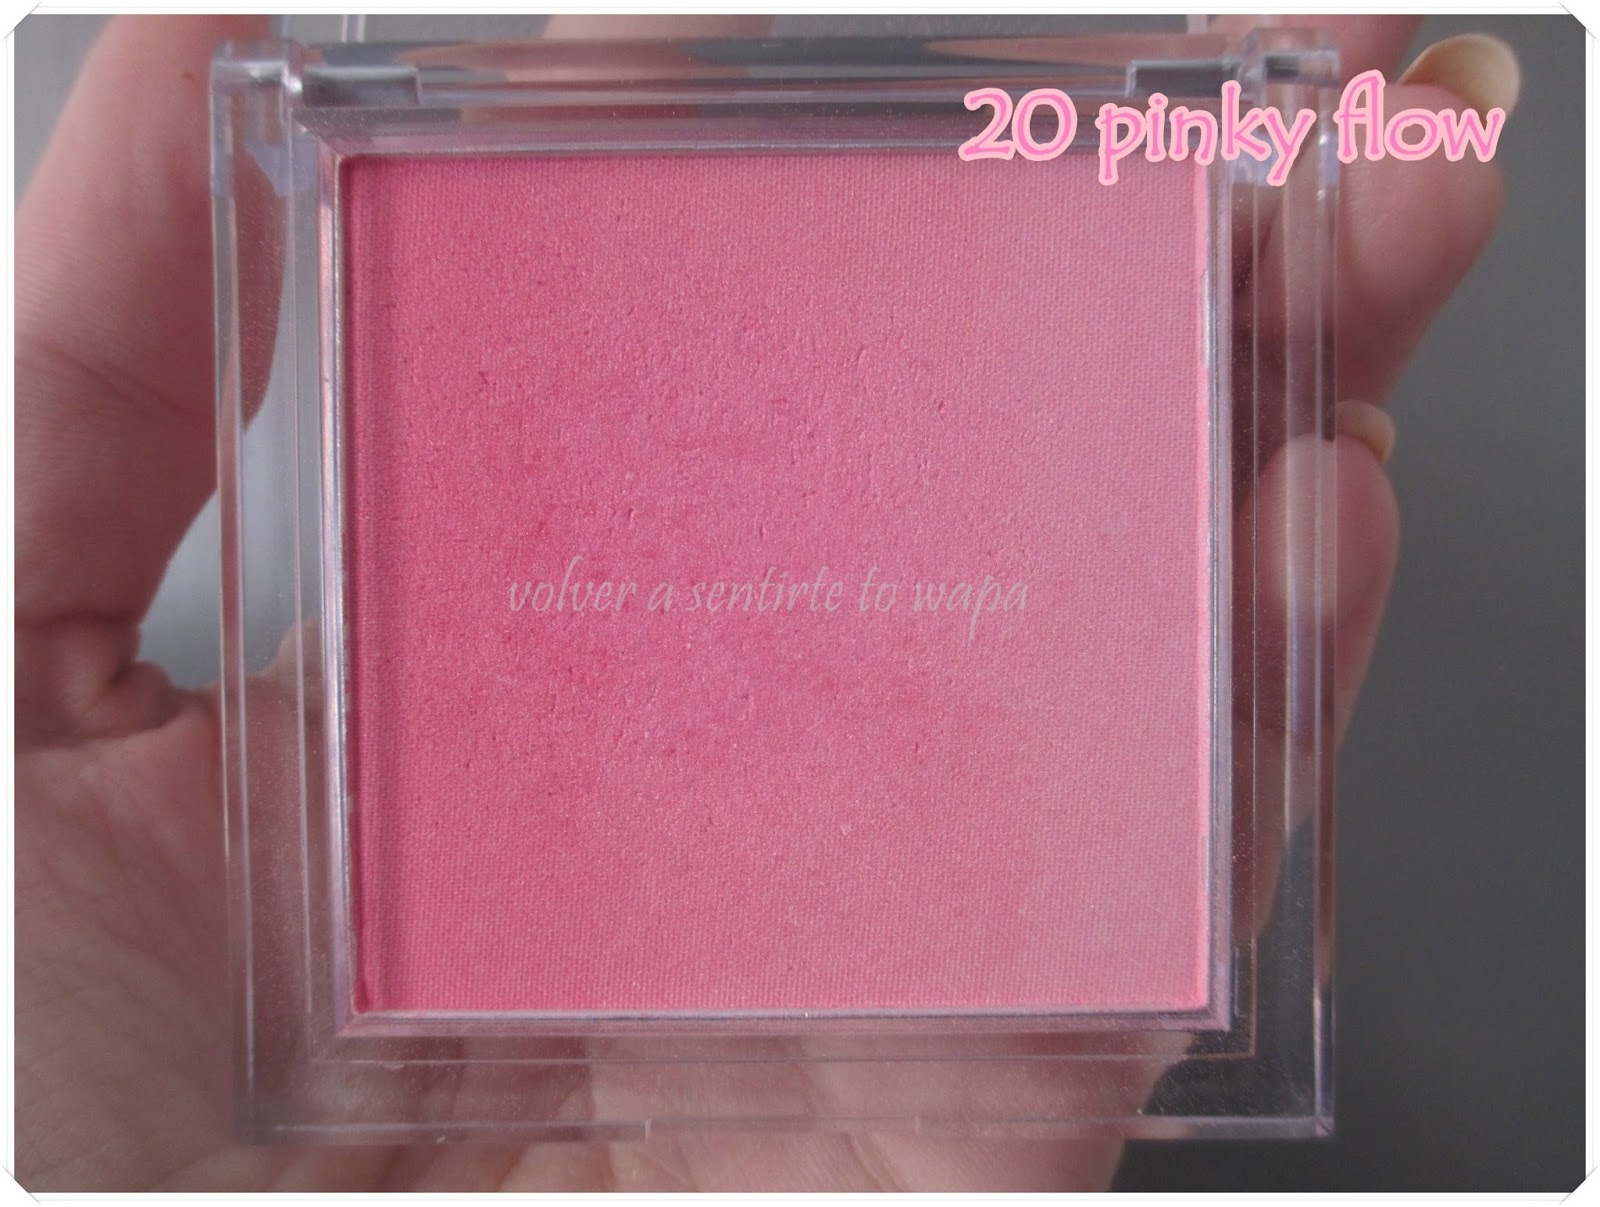 Coloretes de Essence - Blush up! - 20 pinky flow